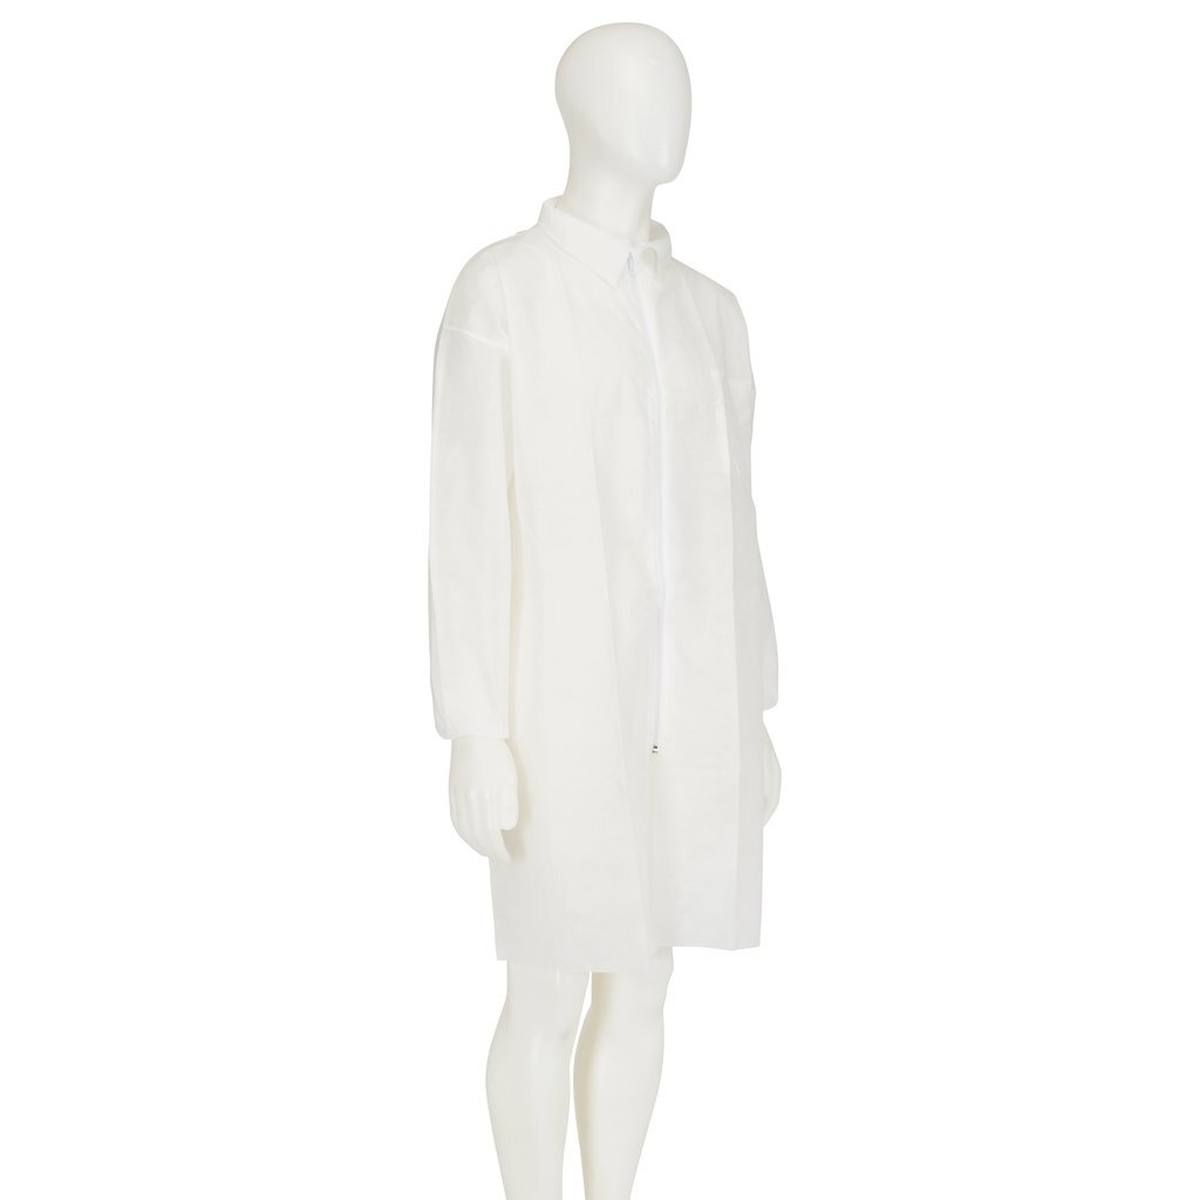 cappotto 3M 4400, bianco, taglia 3XL, materiale 100% polipropilene, traspirante, molto leggero, con chiusura a zip